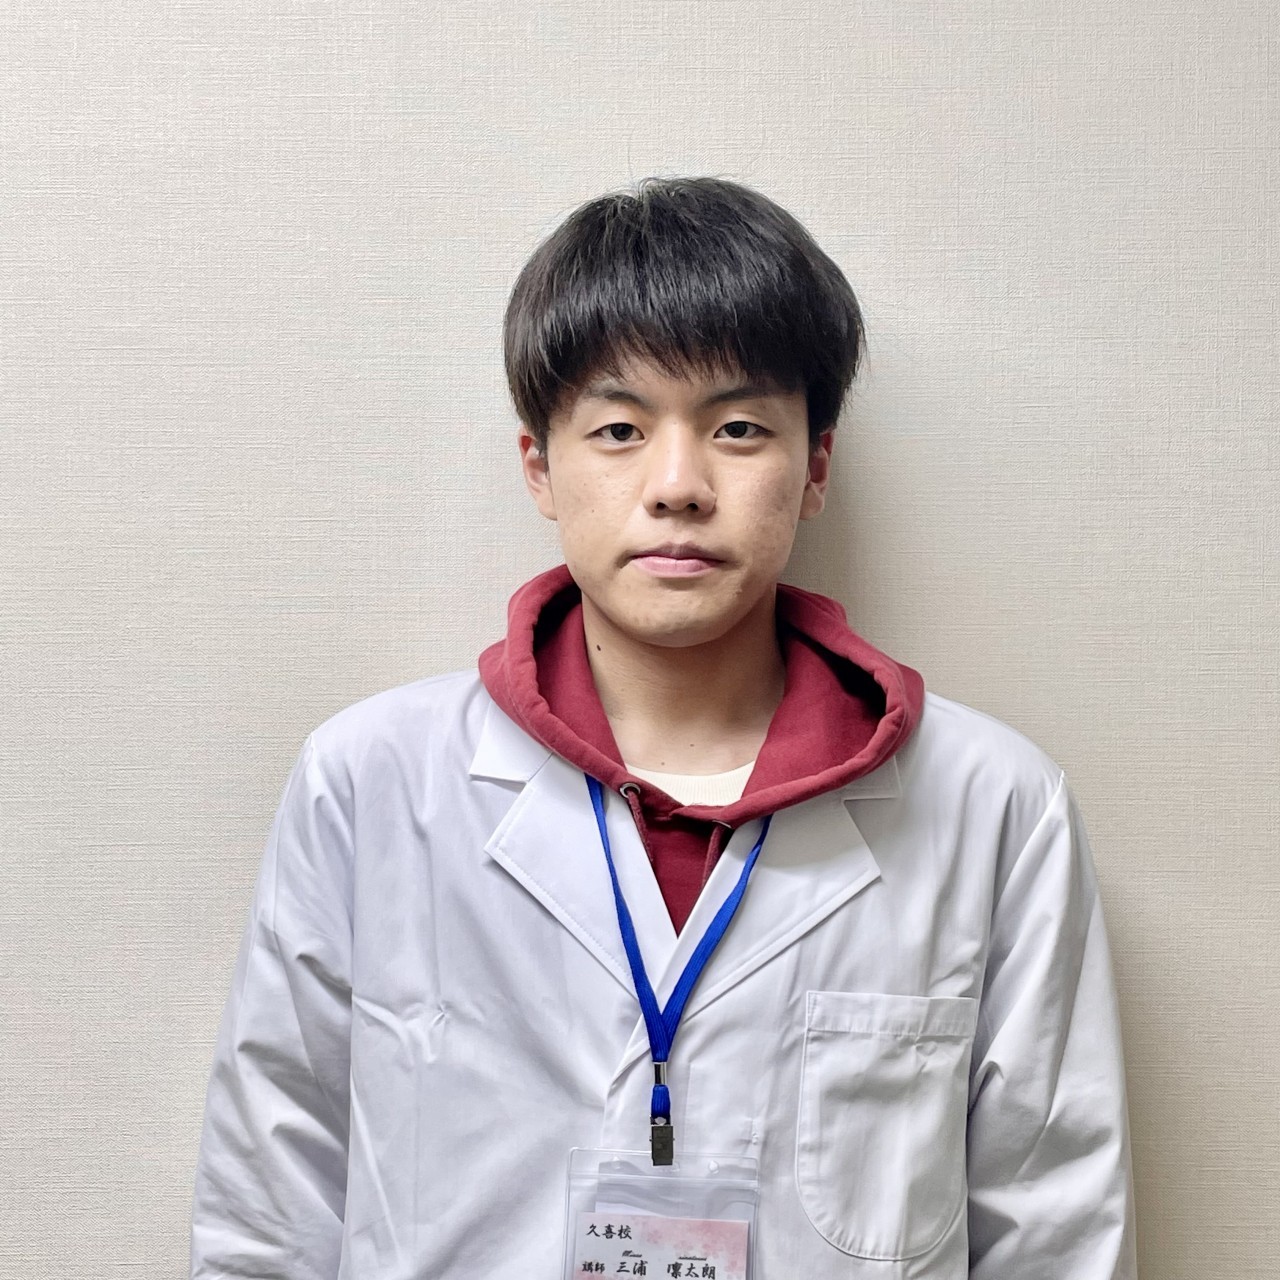 三浦凜太郎(早稲田大学人間科学部健康福祉科学科)先生